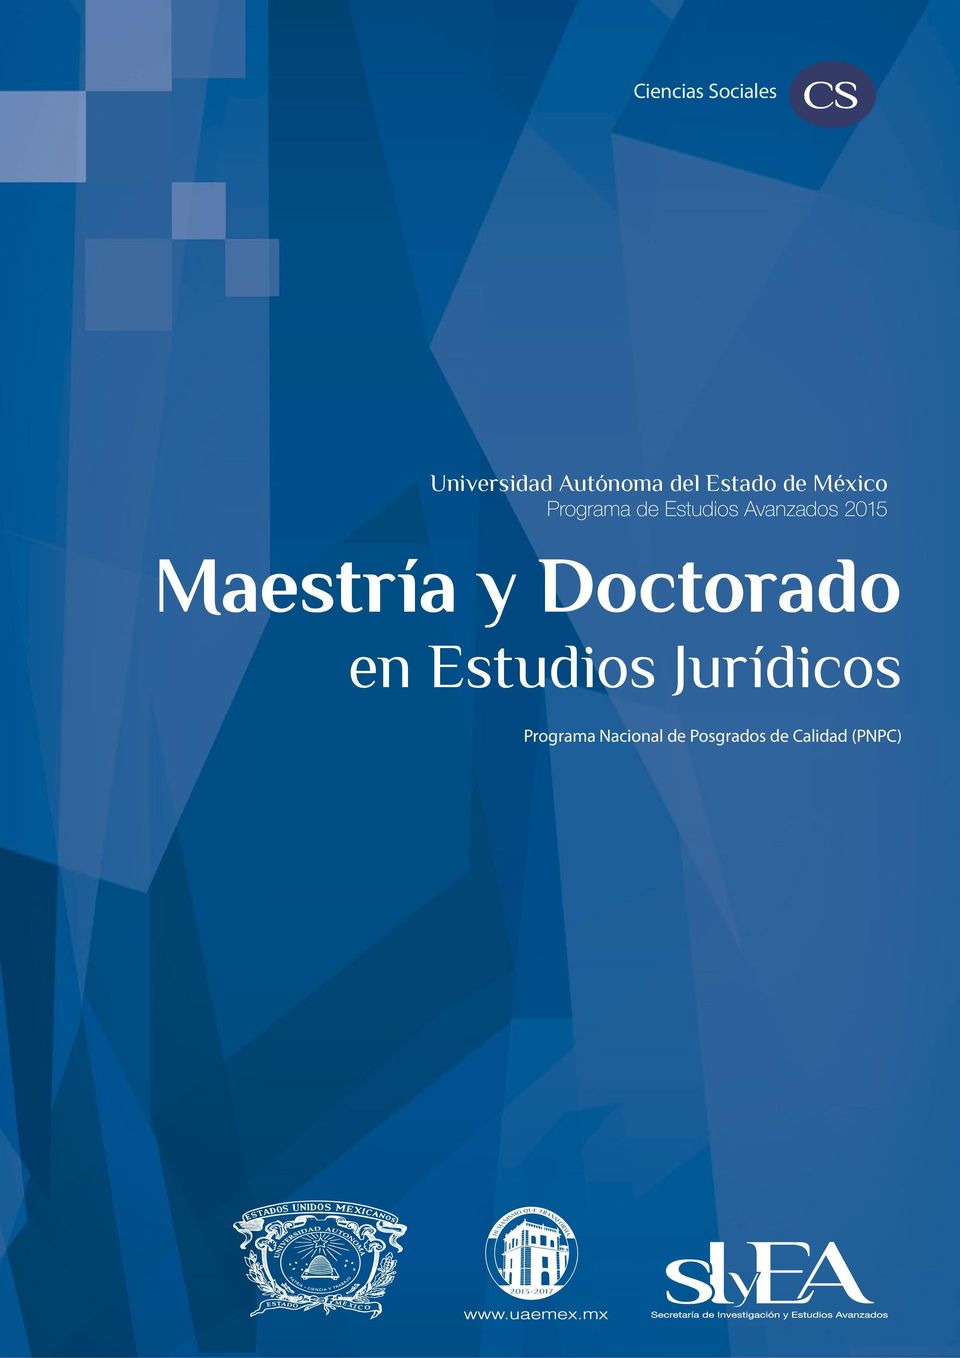 Maestría y Doctorado en Estudios Jurídicos